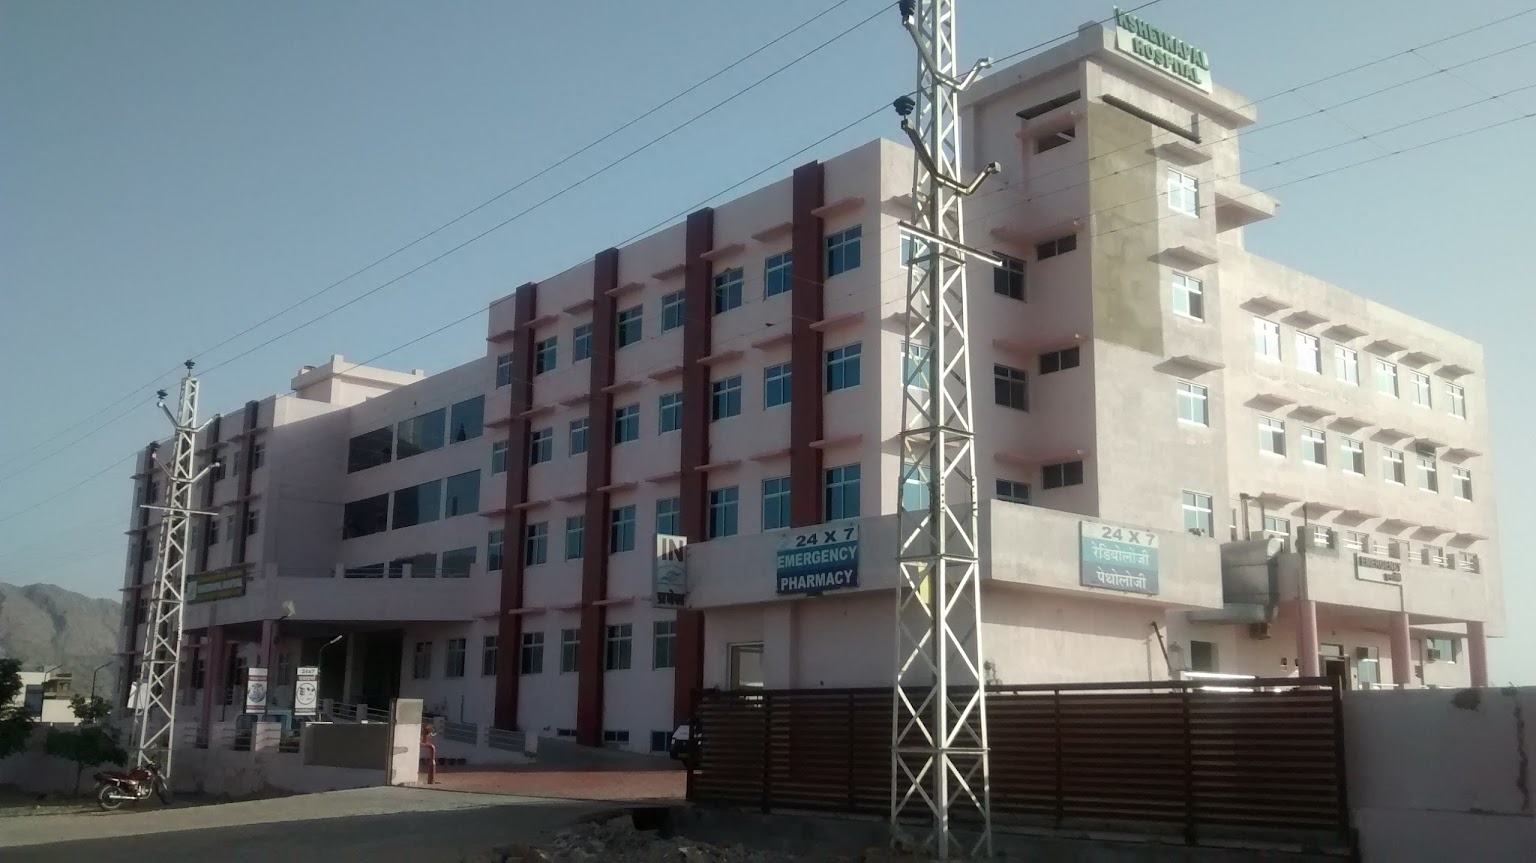 Kshetrapal Hospital